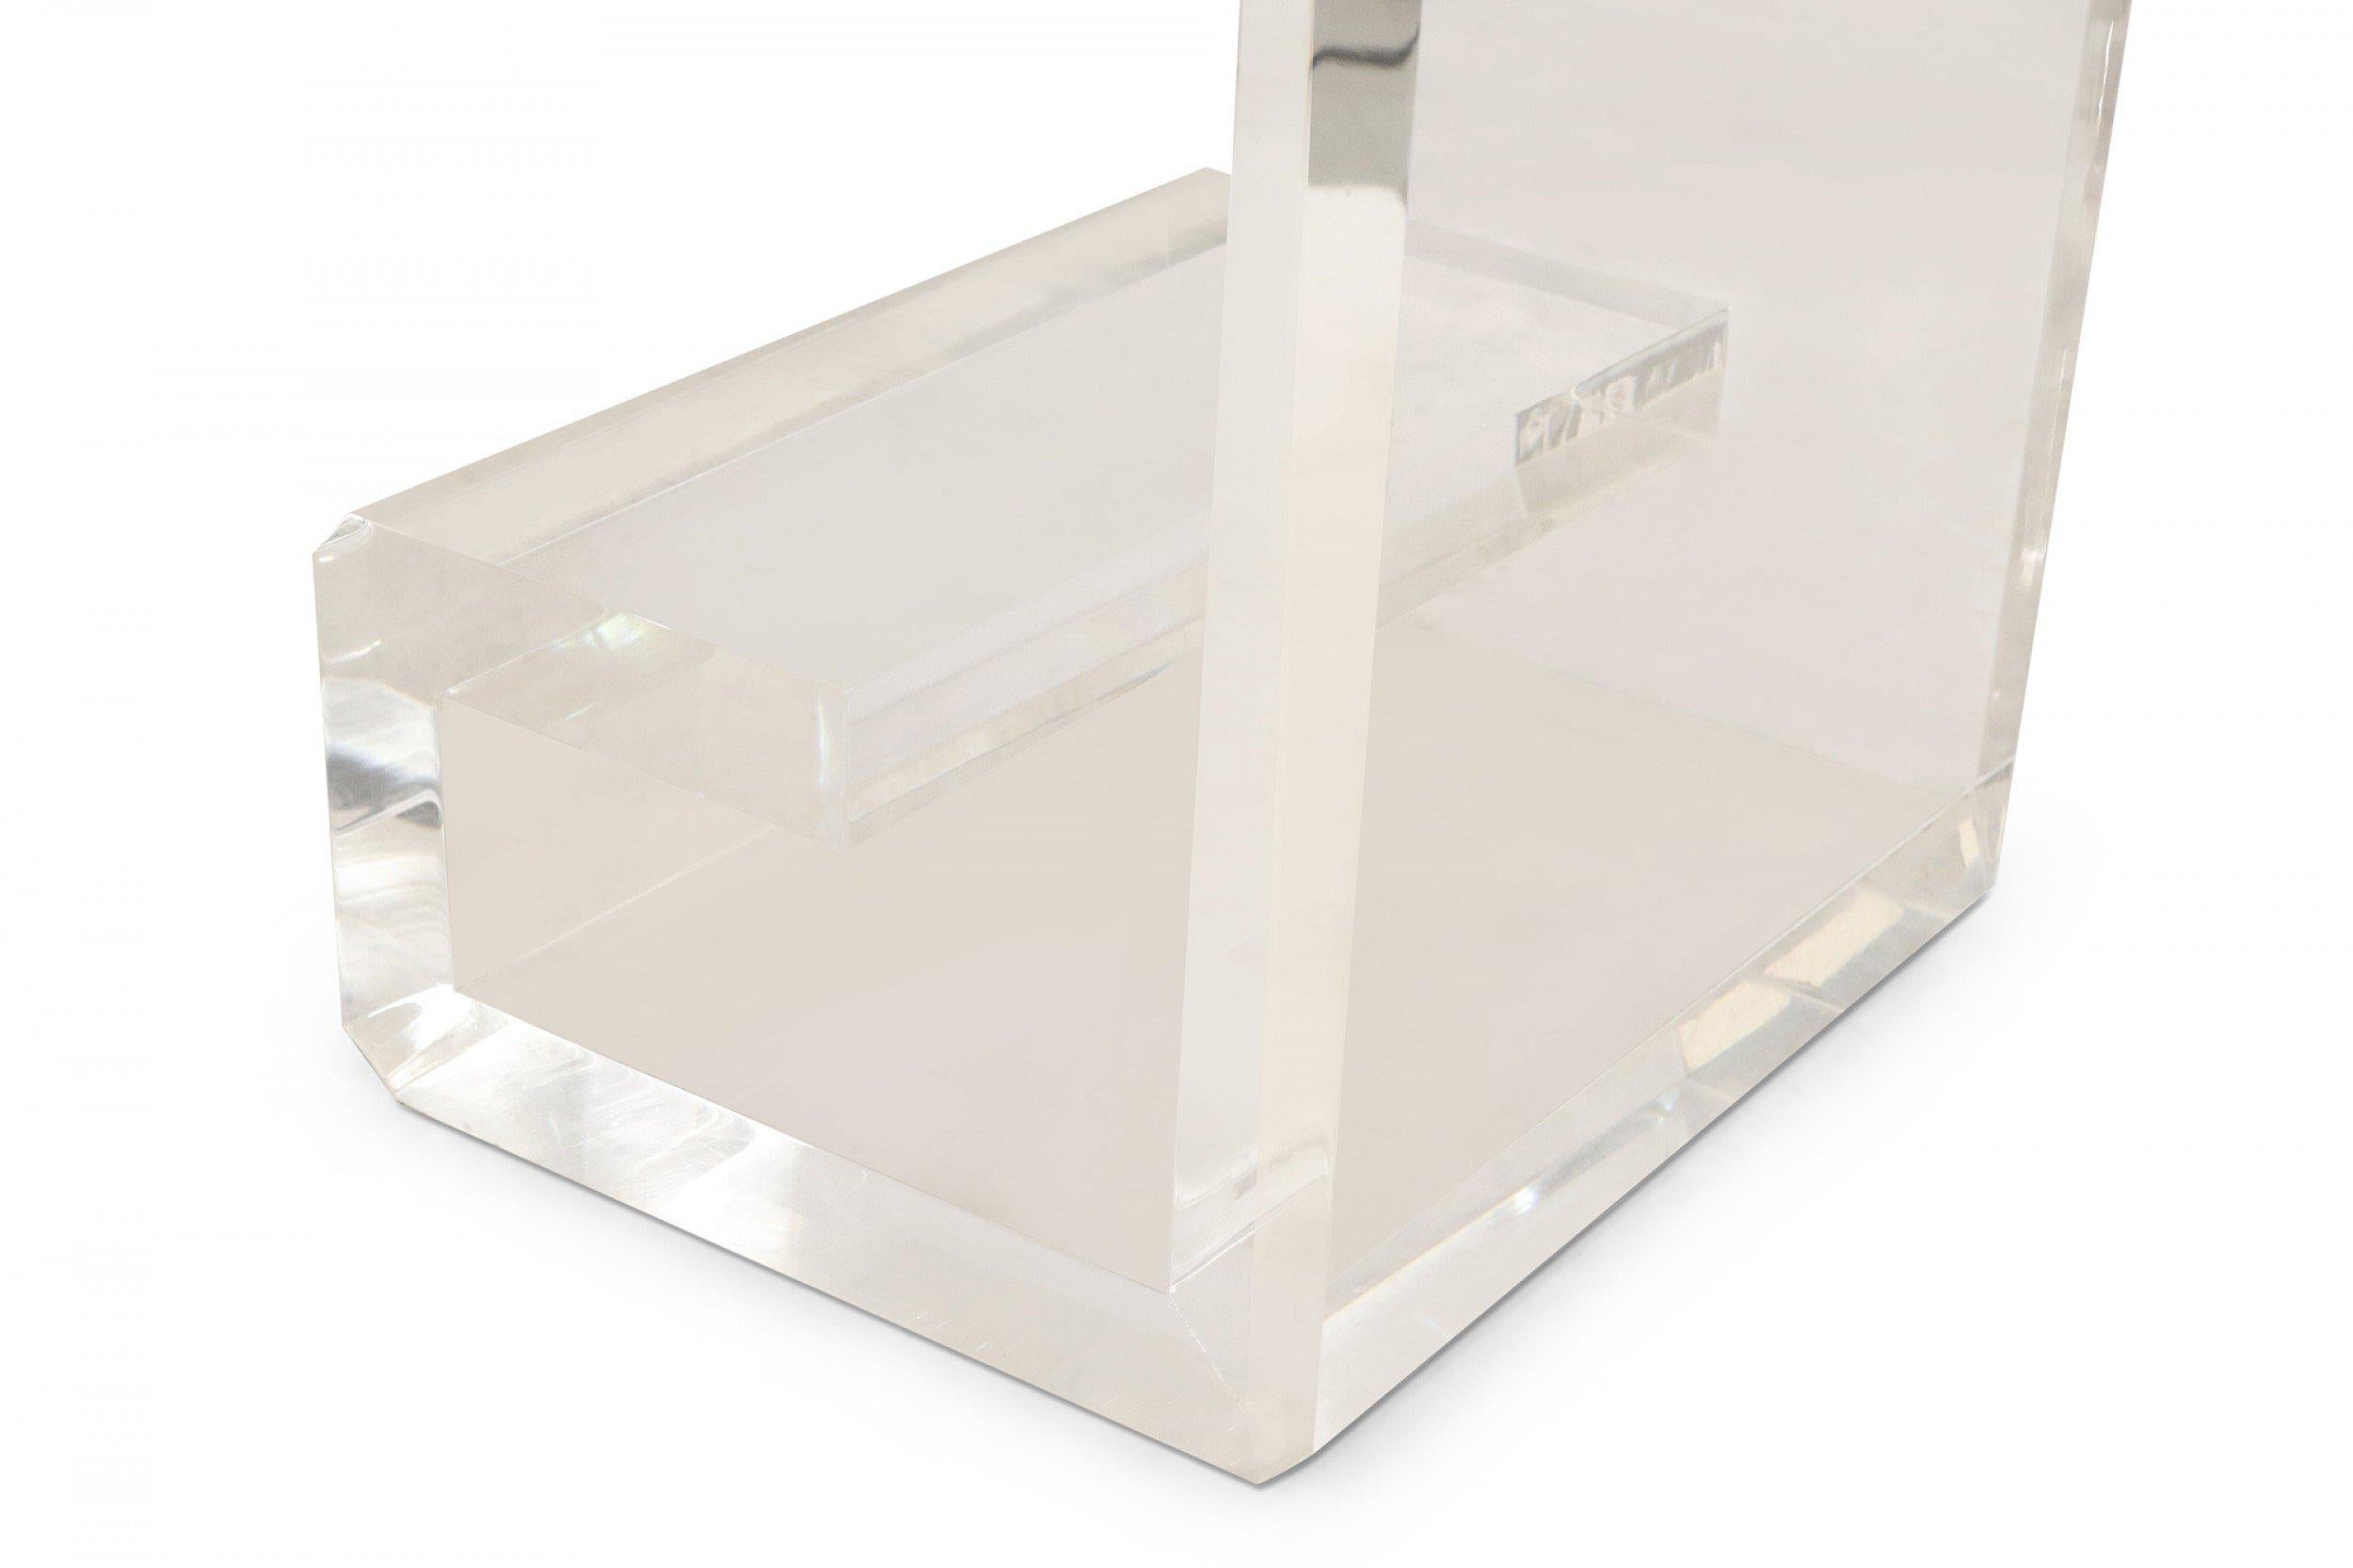 Escritorio contemporáneo de lucita con 3 cuadrados de espejo envejecido incrustados en la superficie superior, un compartimento/estante de cristal poco profundo y patas geométricas en forma de volutas (diseñado por Geoffrey Bradfield).
 